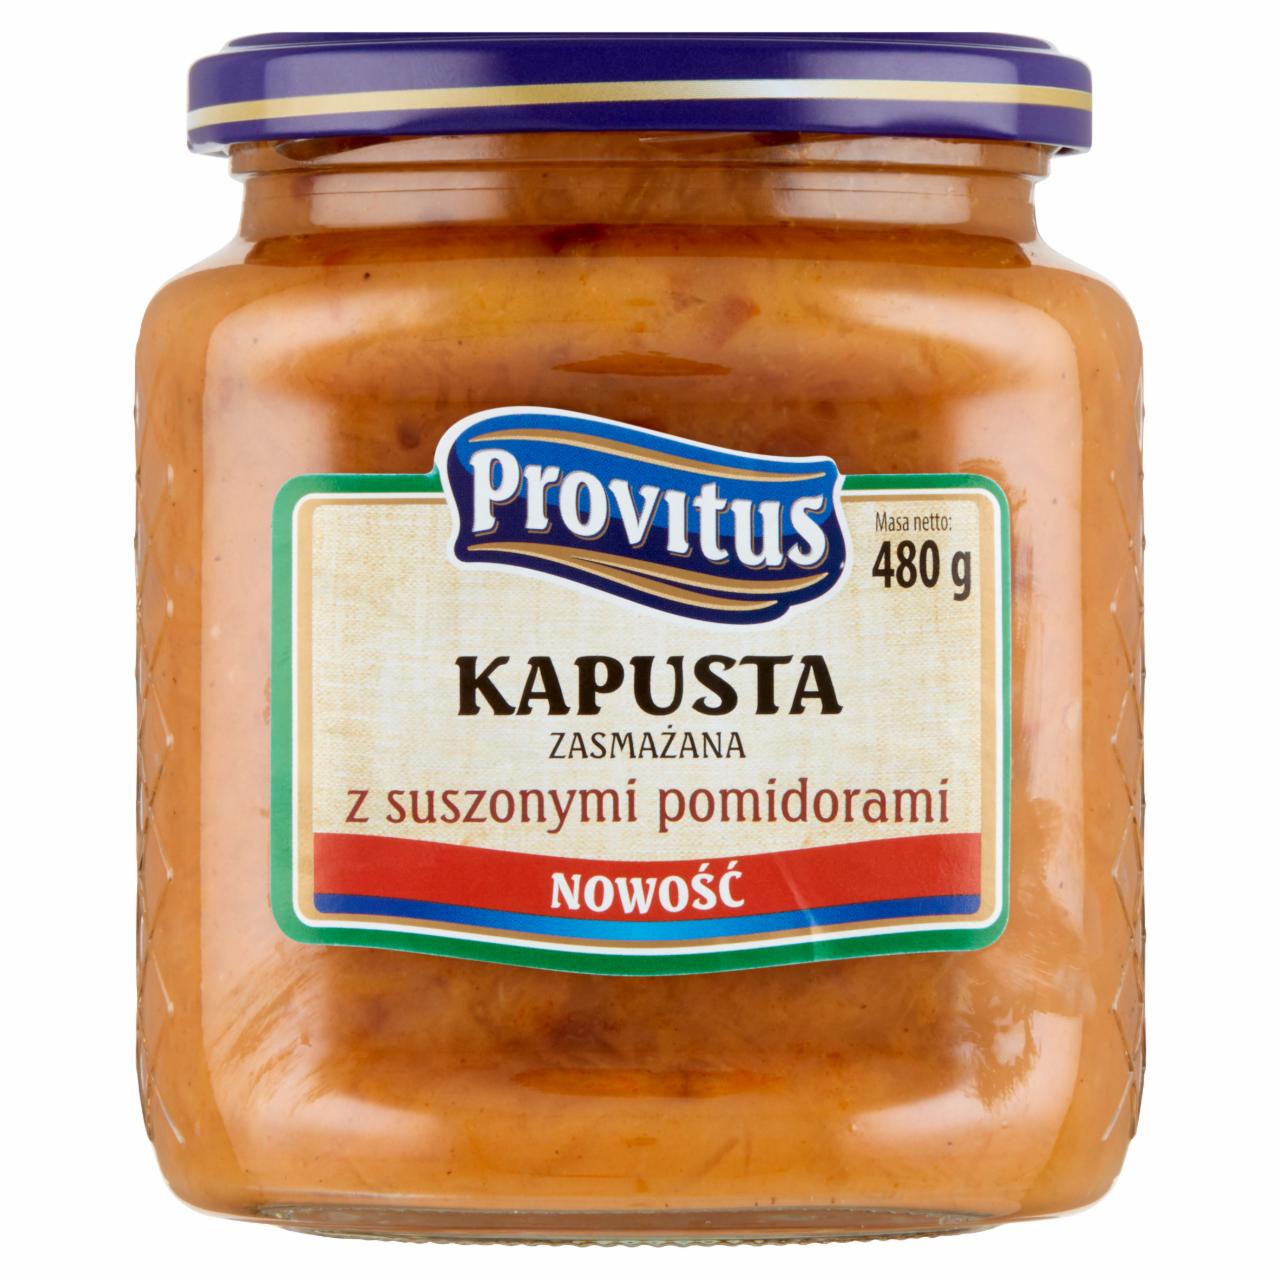 Zdjęcia - Provitus Kapusta zasmażana z suszonymi pomidorami 480 g